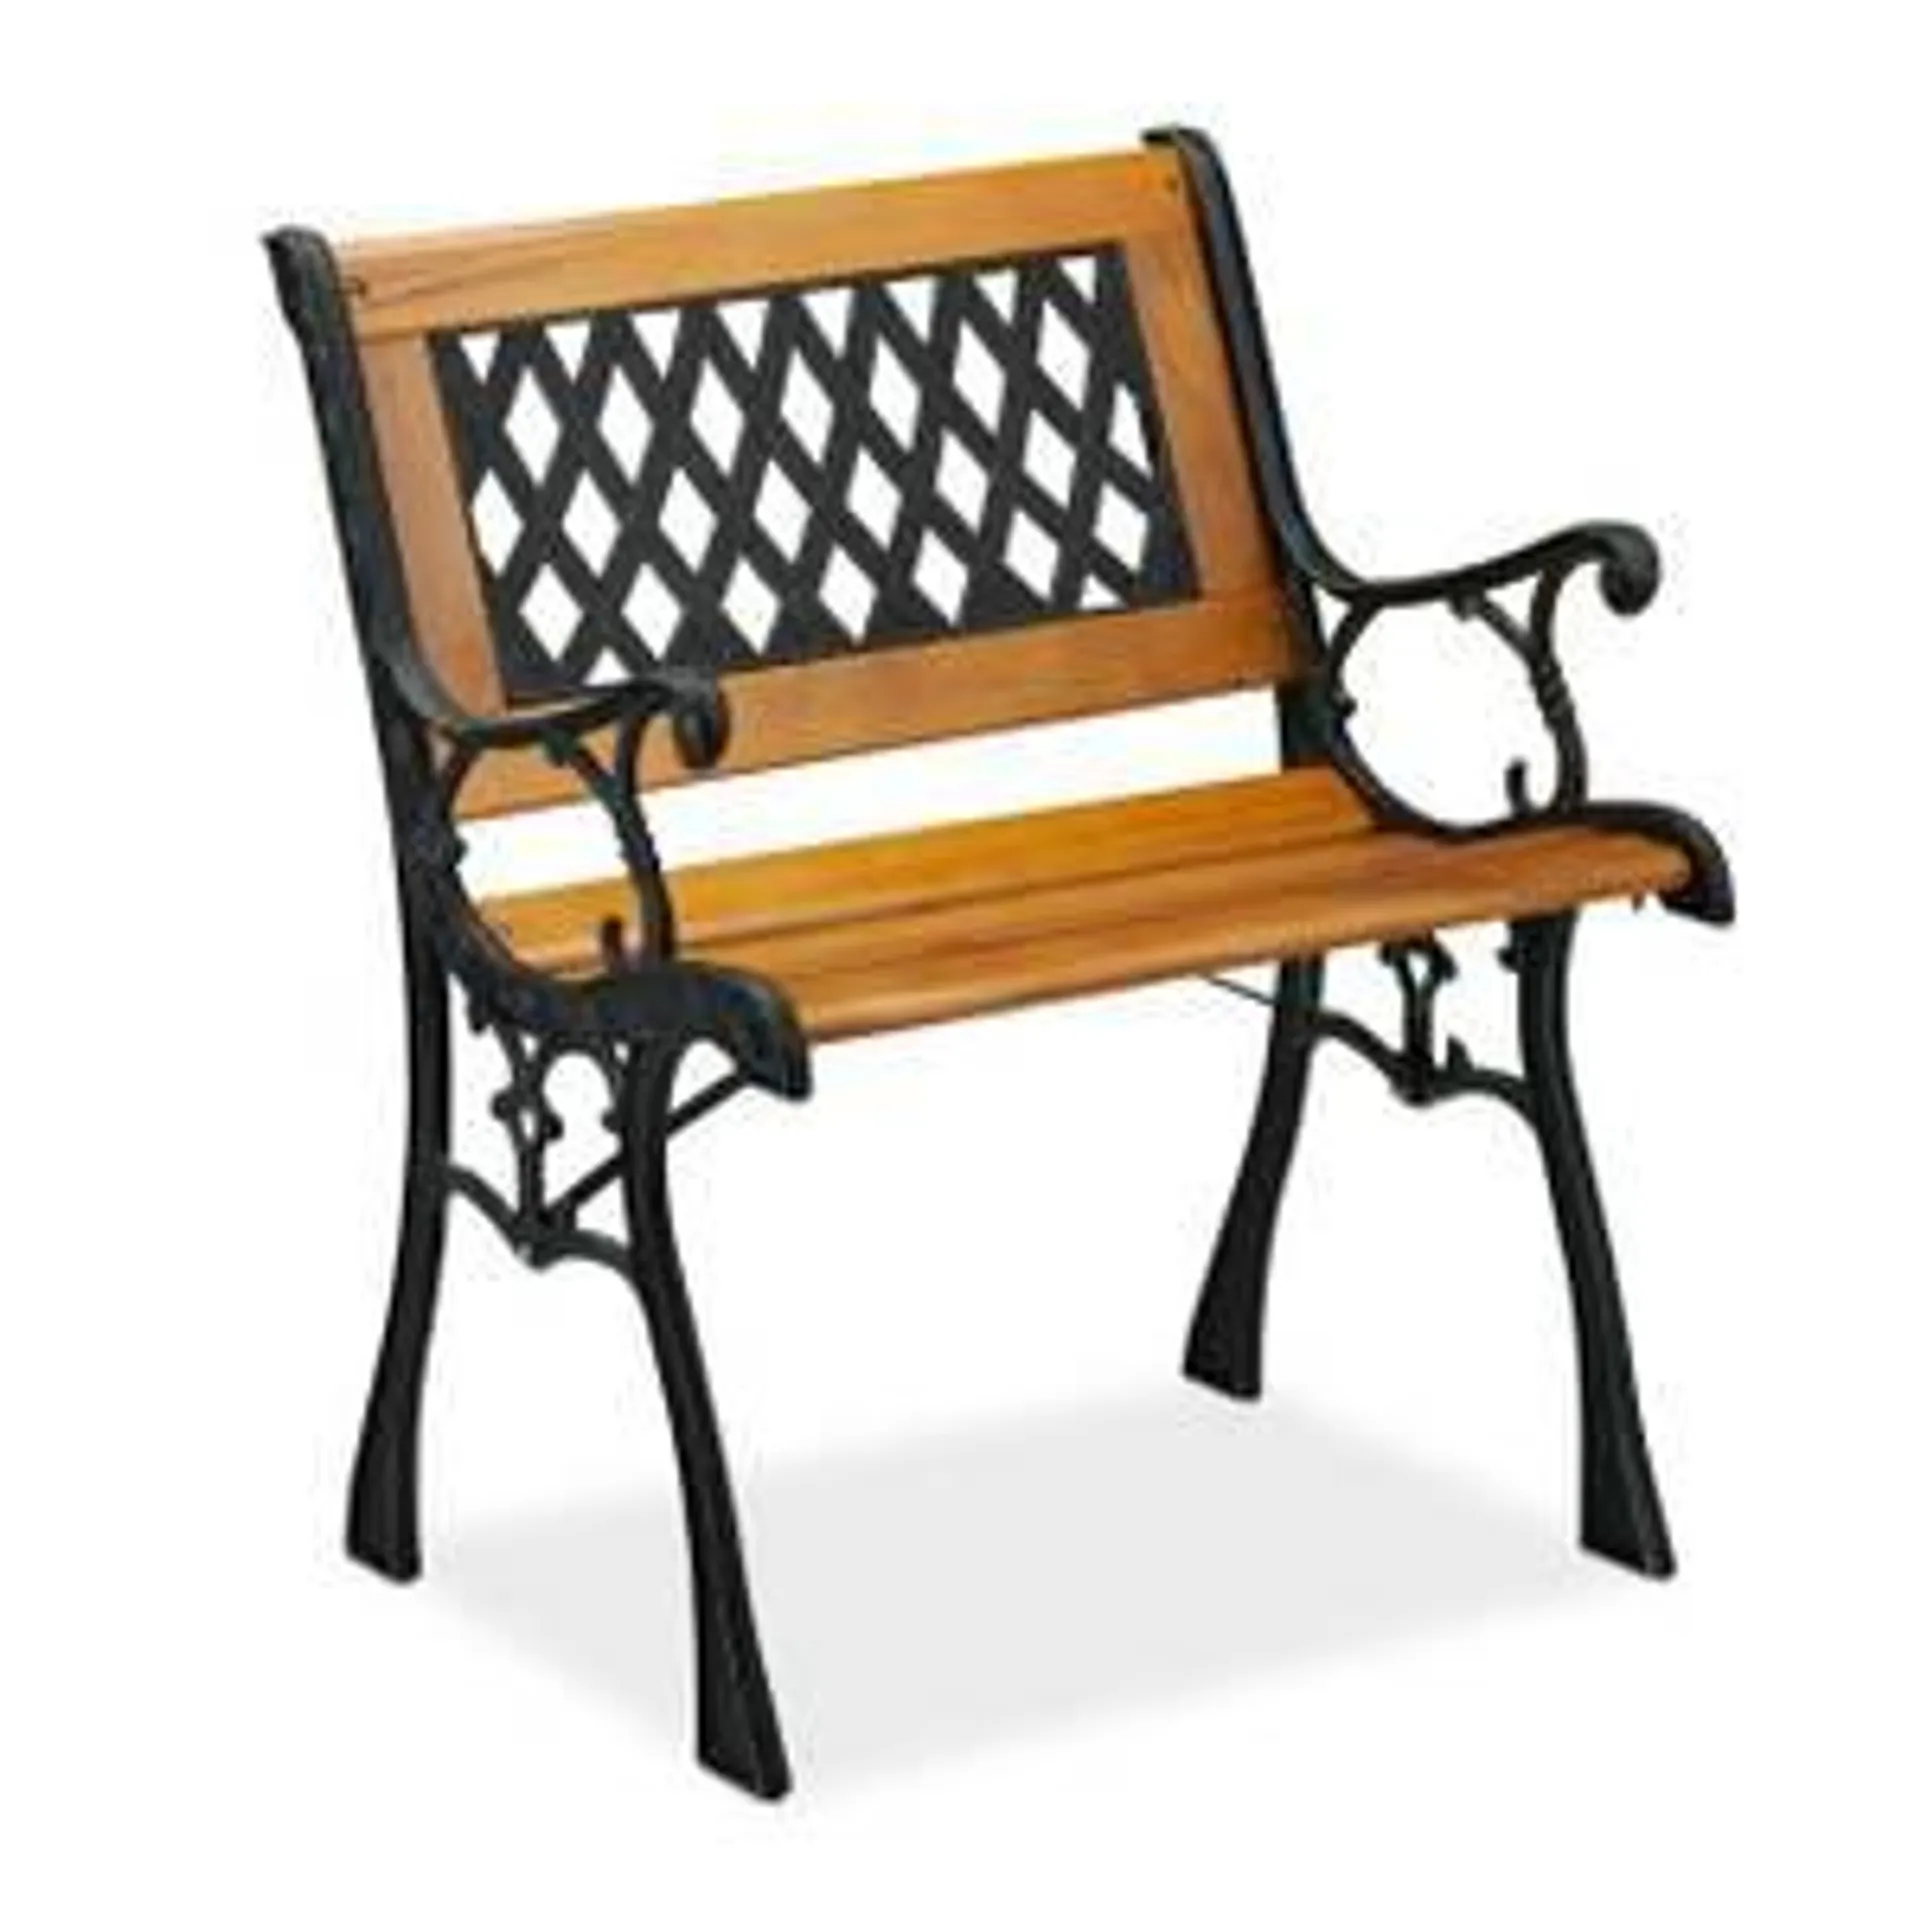 Chaise basse pour jardin en bois